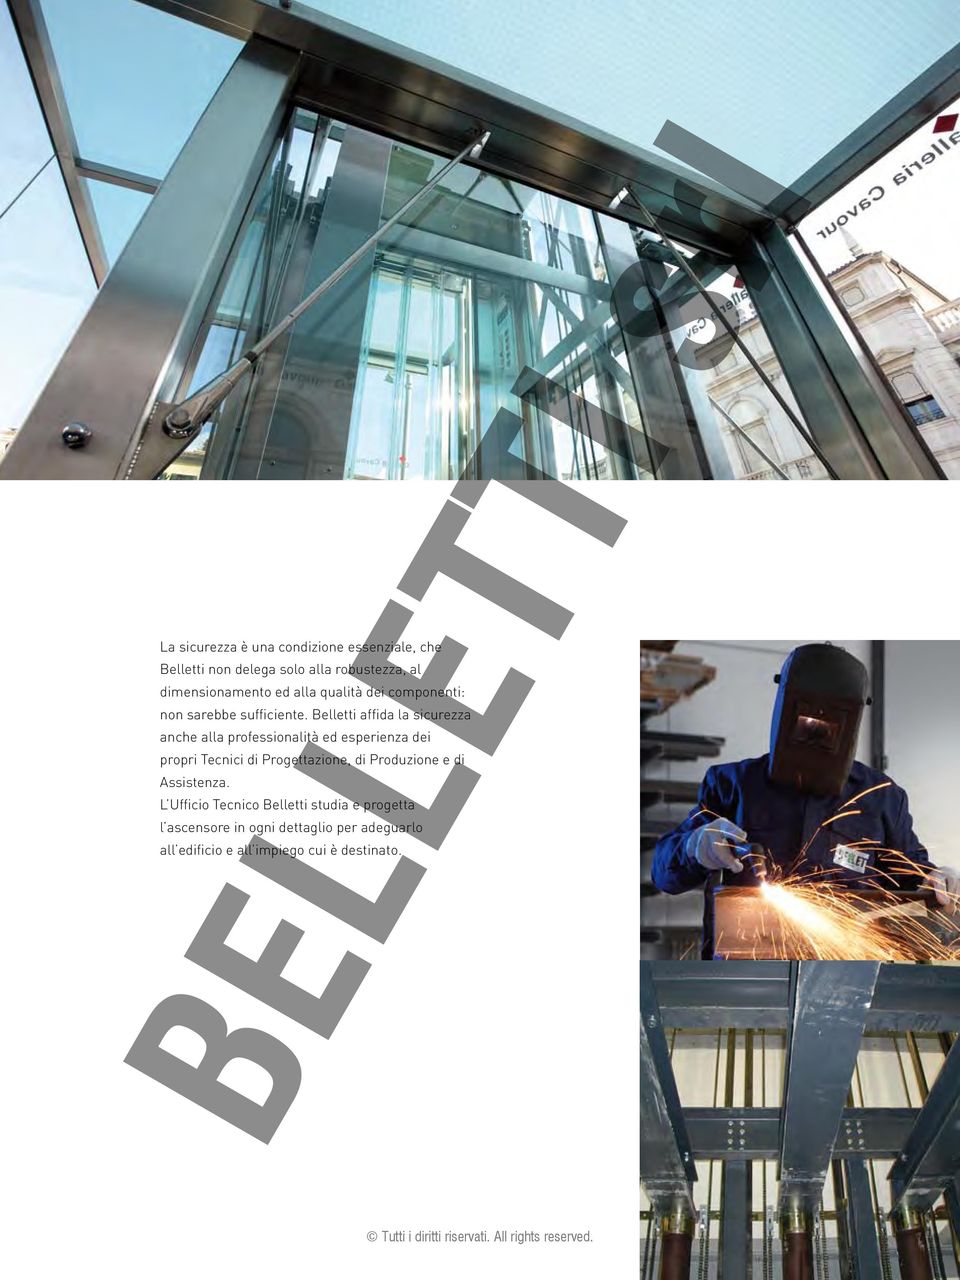 Belletti affida la sicurezza anche alla professionalità ed esperienza dei propri Tecnici di Progettazione,